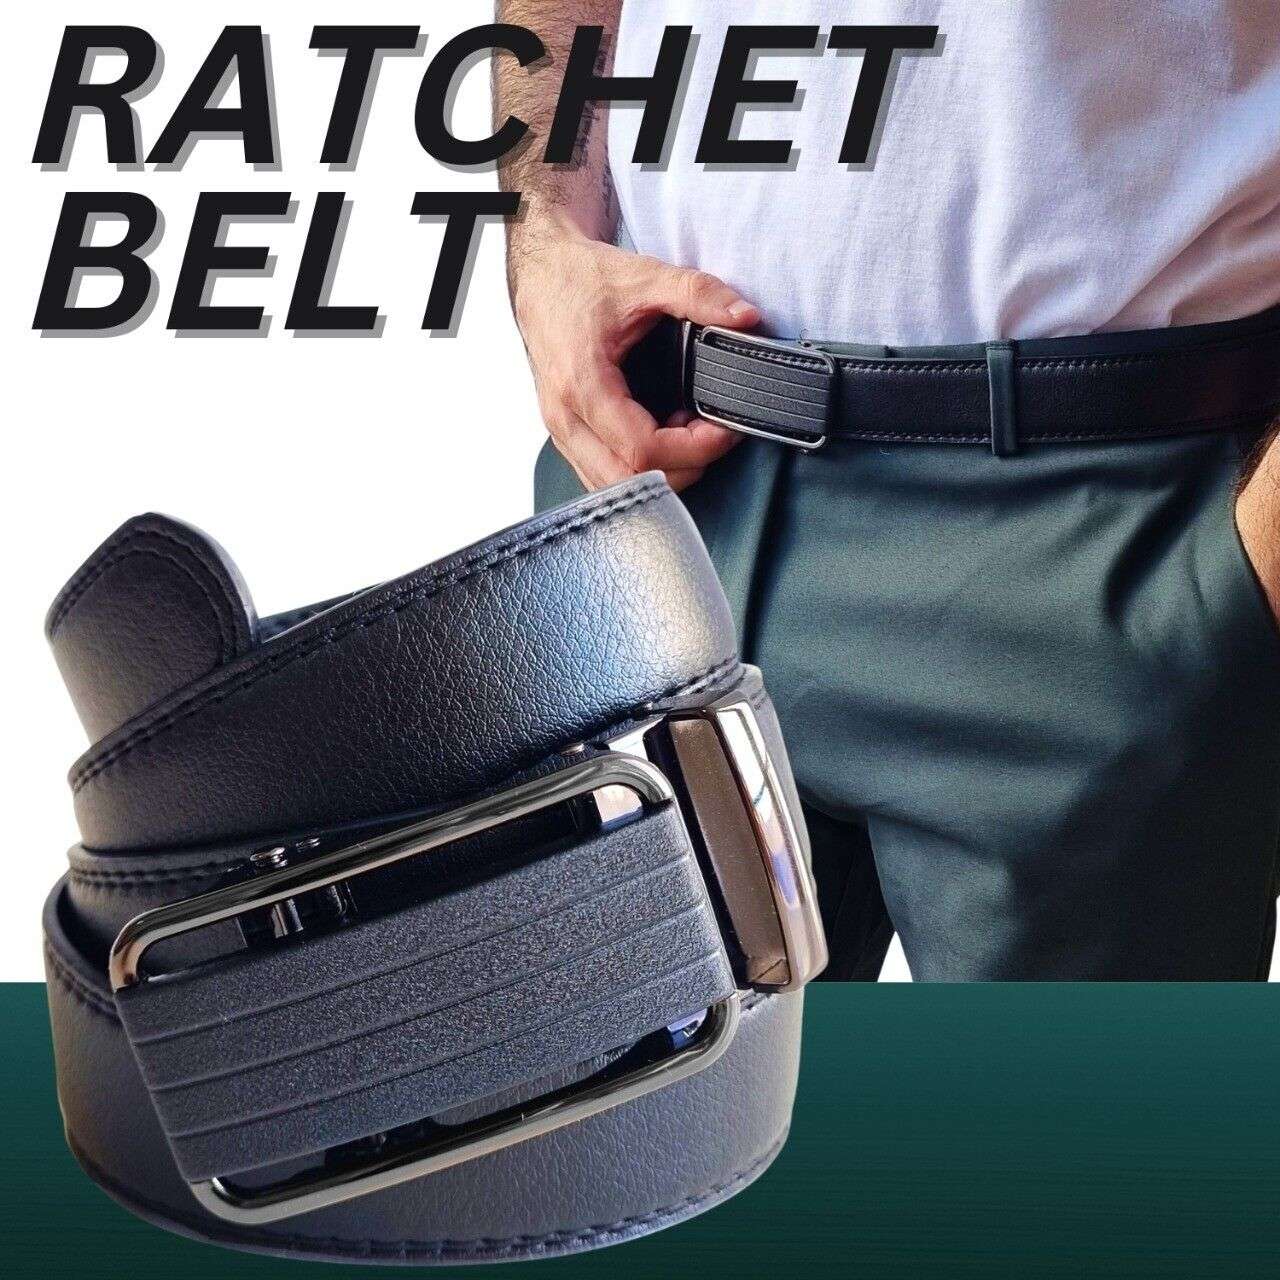 Adjustable Slide Buckle Leather Ratchet Belt for Men - Gifting By Julia M